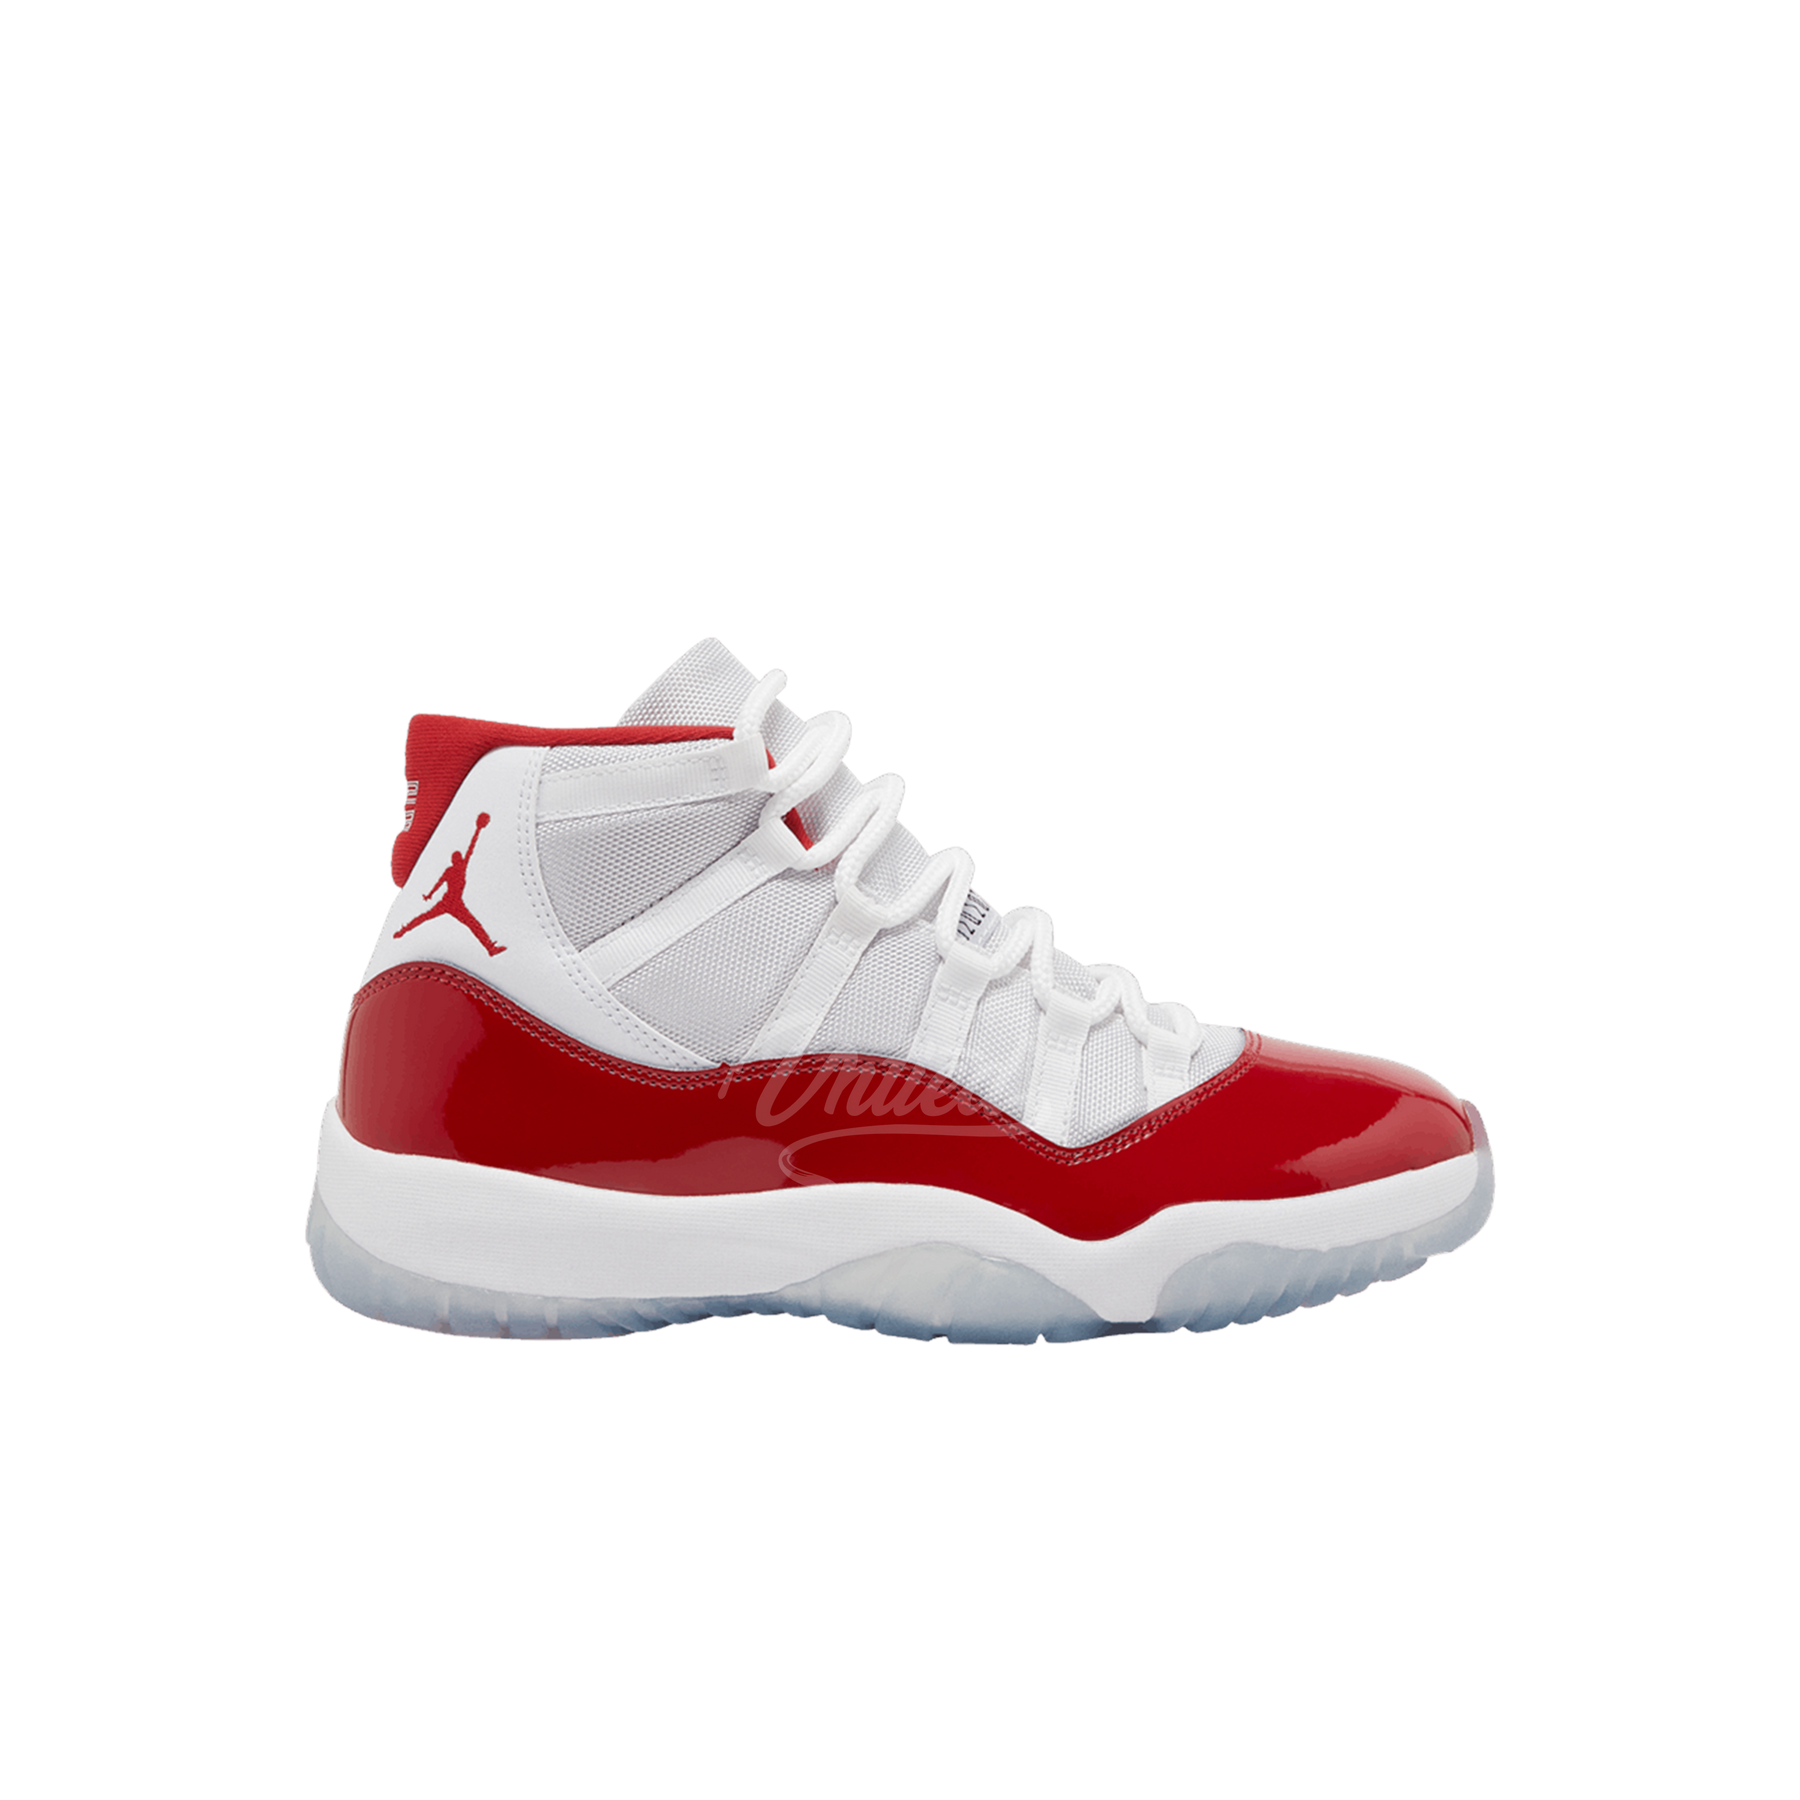 Air Jordan 11 "Cherry"